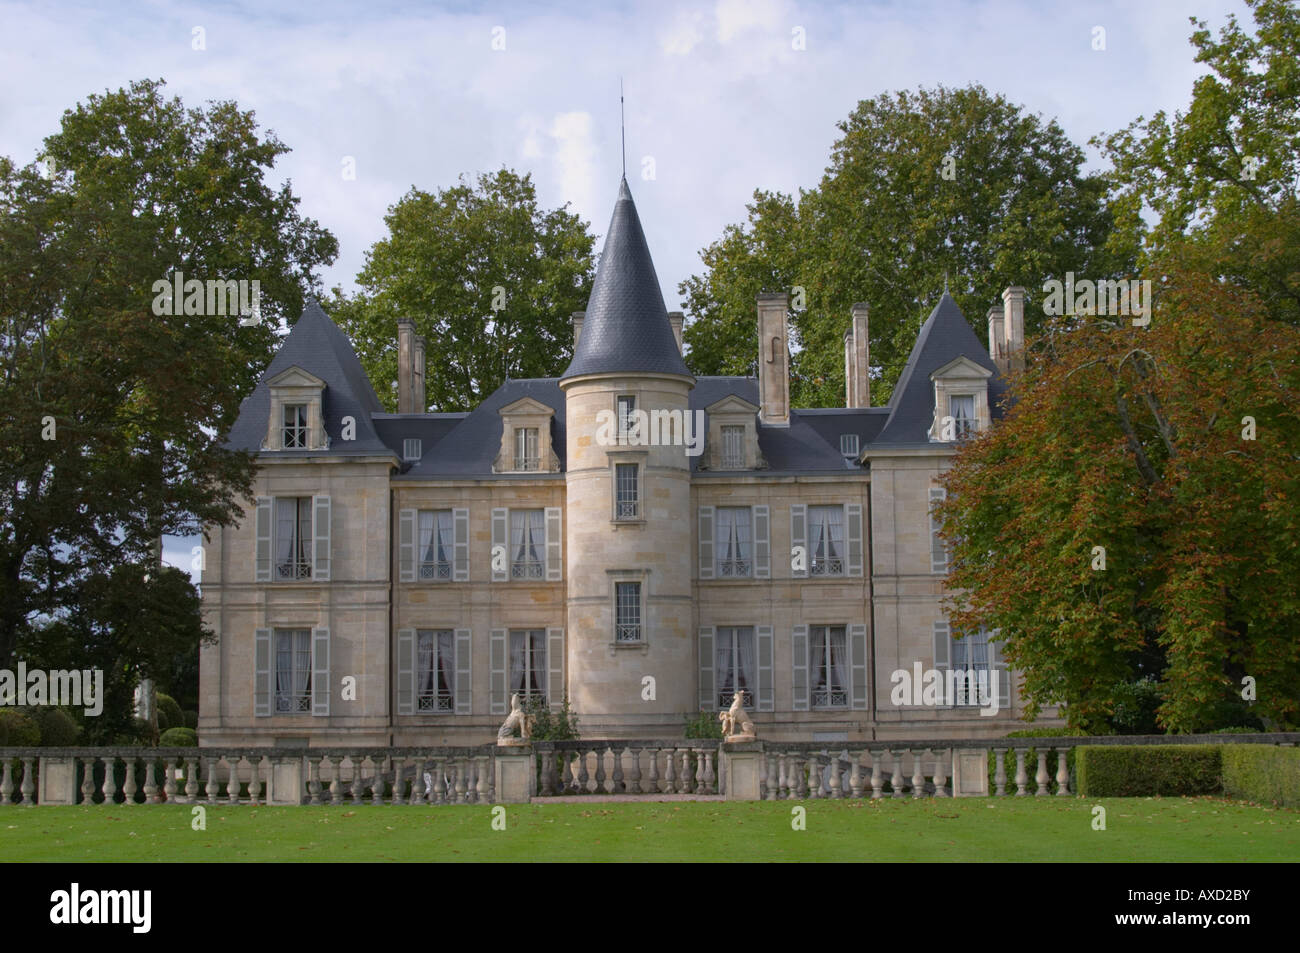 On the terrasse. Chateau Pichon Longueville Comtesse de Lalande, pauillac, Medoc, Bordeaux, France Stock Photo